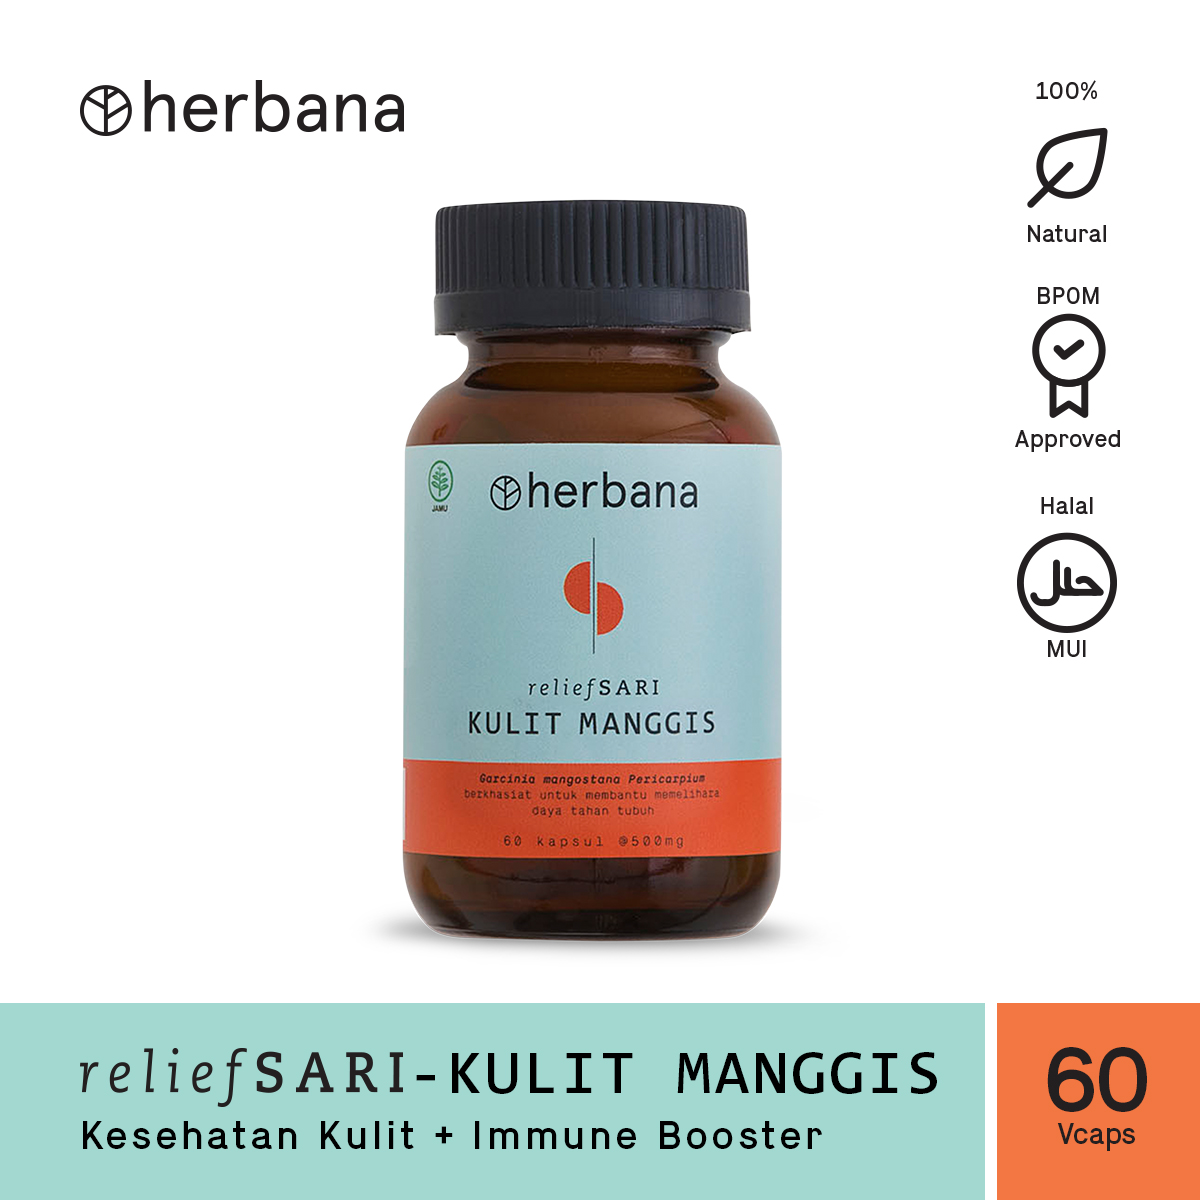 herbana-relief-sari-kulit-manggis-60-capsules-47-1615973143.jpg